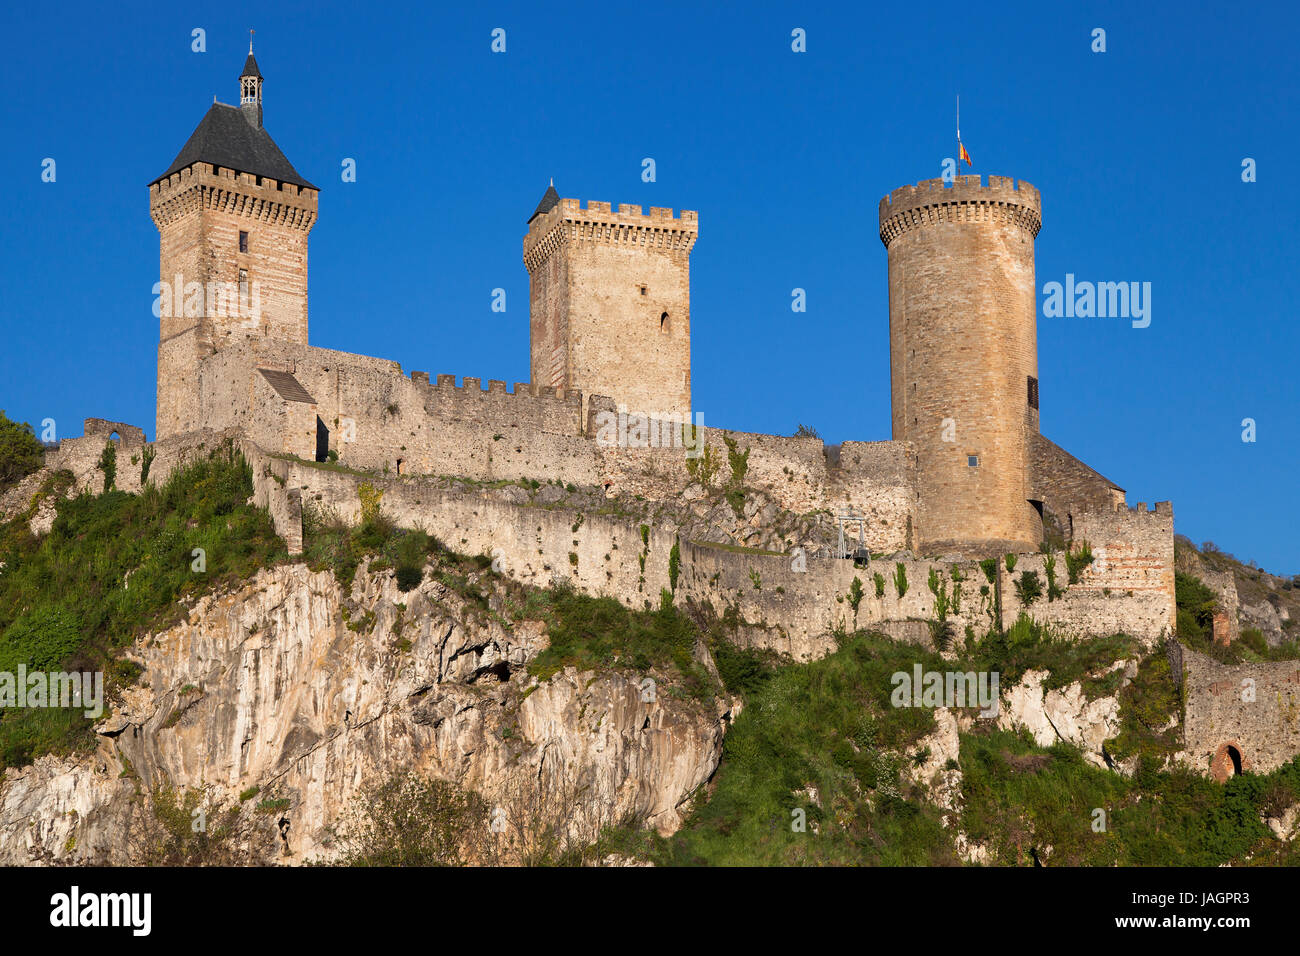 Chateau de Foix, Occitanie, France Stock Photo - Alamy